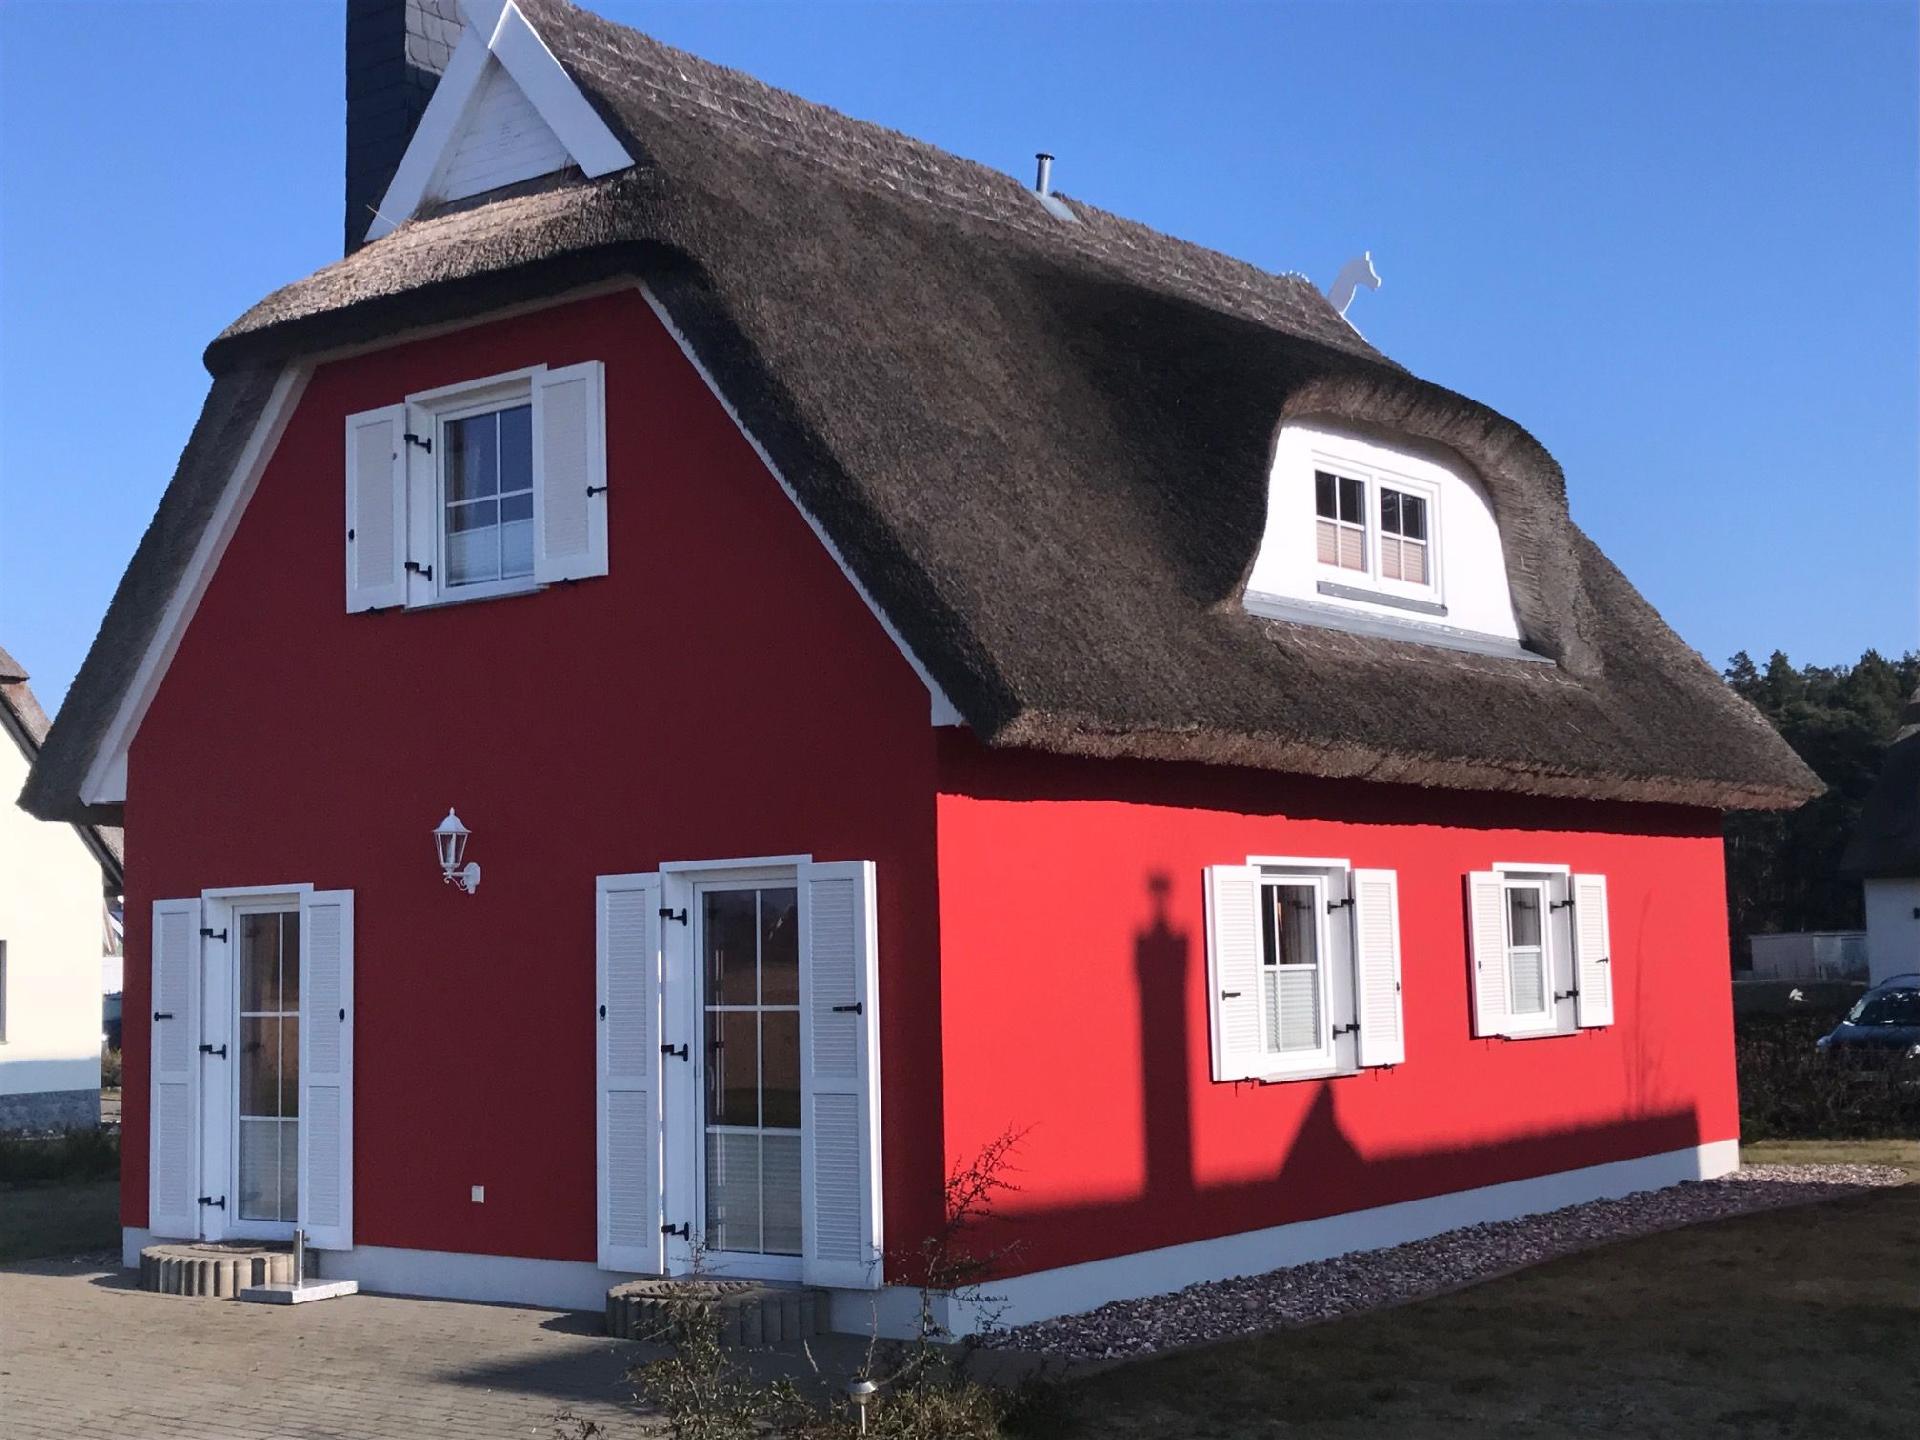 Ferienhaus in Juliusruh mit Offenerem Garten Ferienhaus an der Ostsee